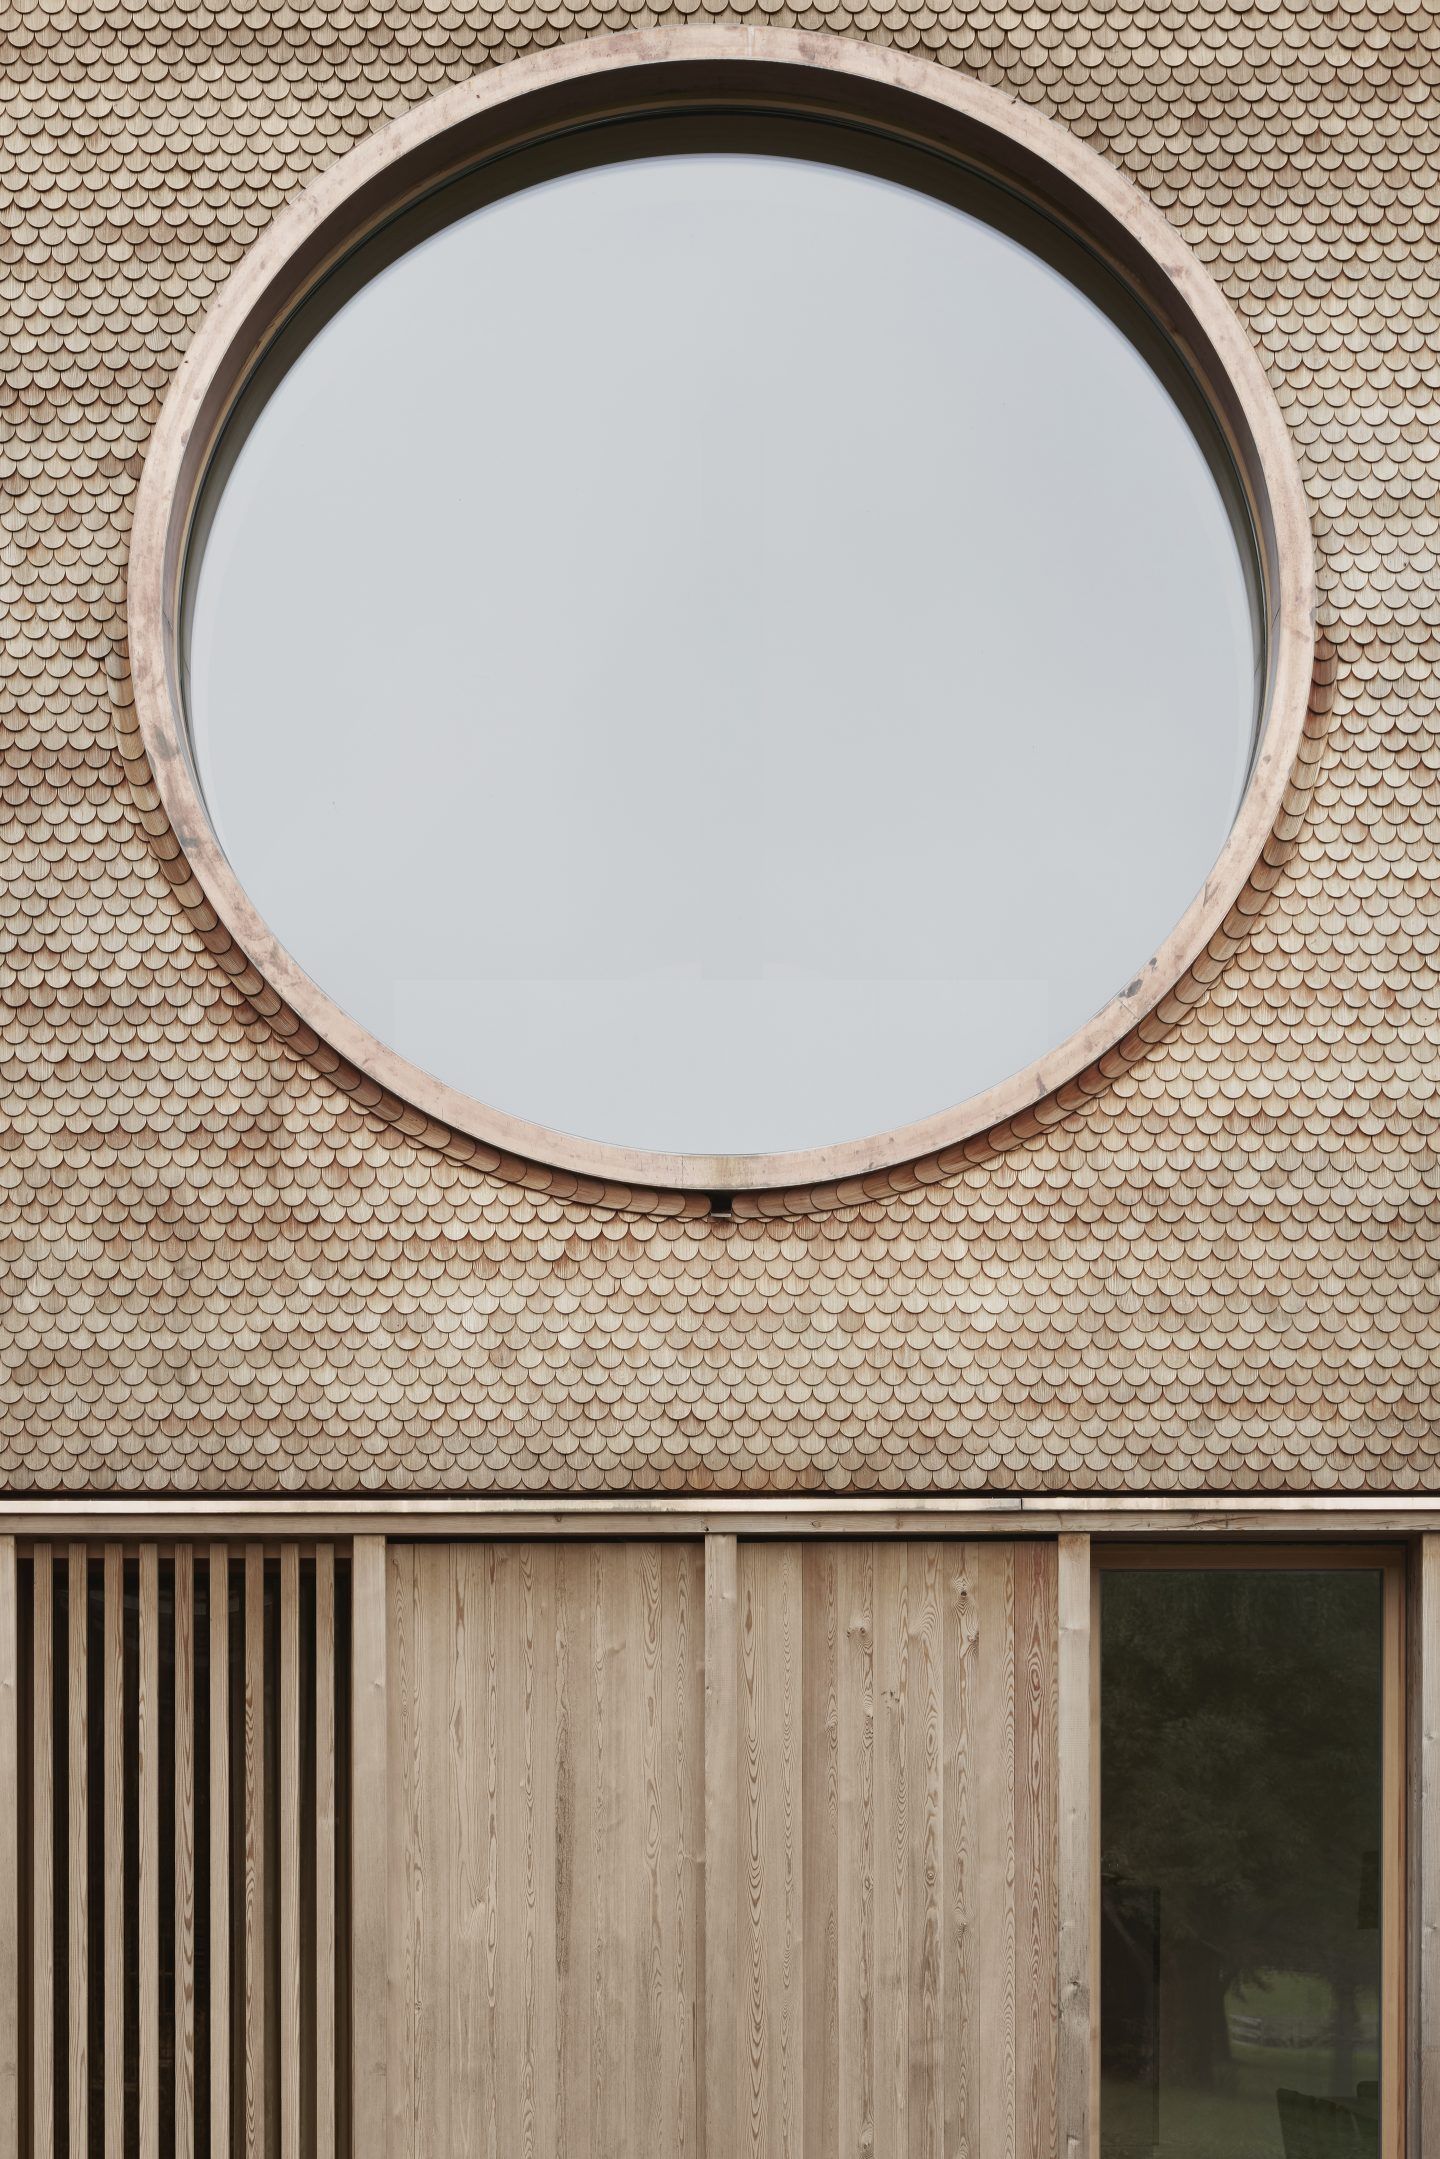 IGNANT-Architecture-Innauer-Matt-Architekten-House-With-Three-Eyes-04